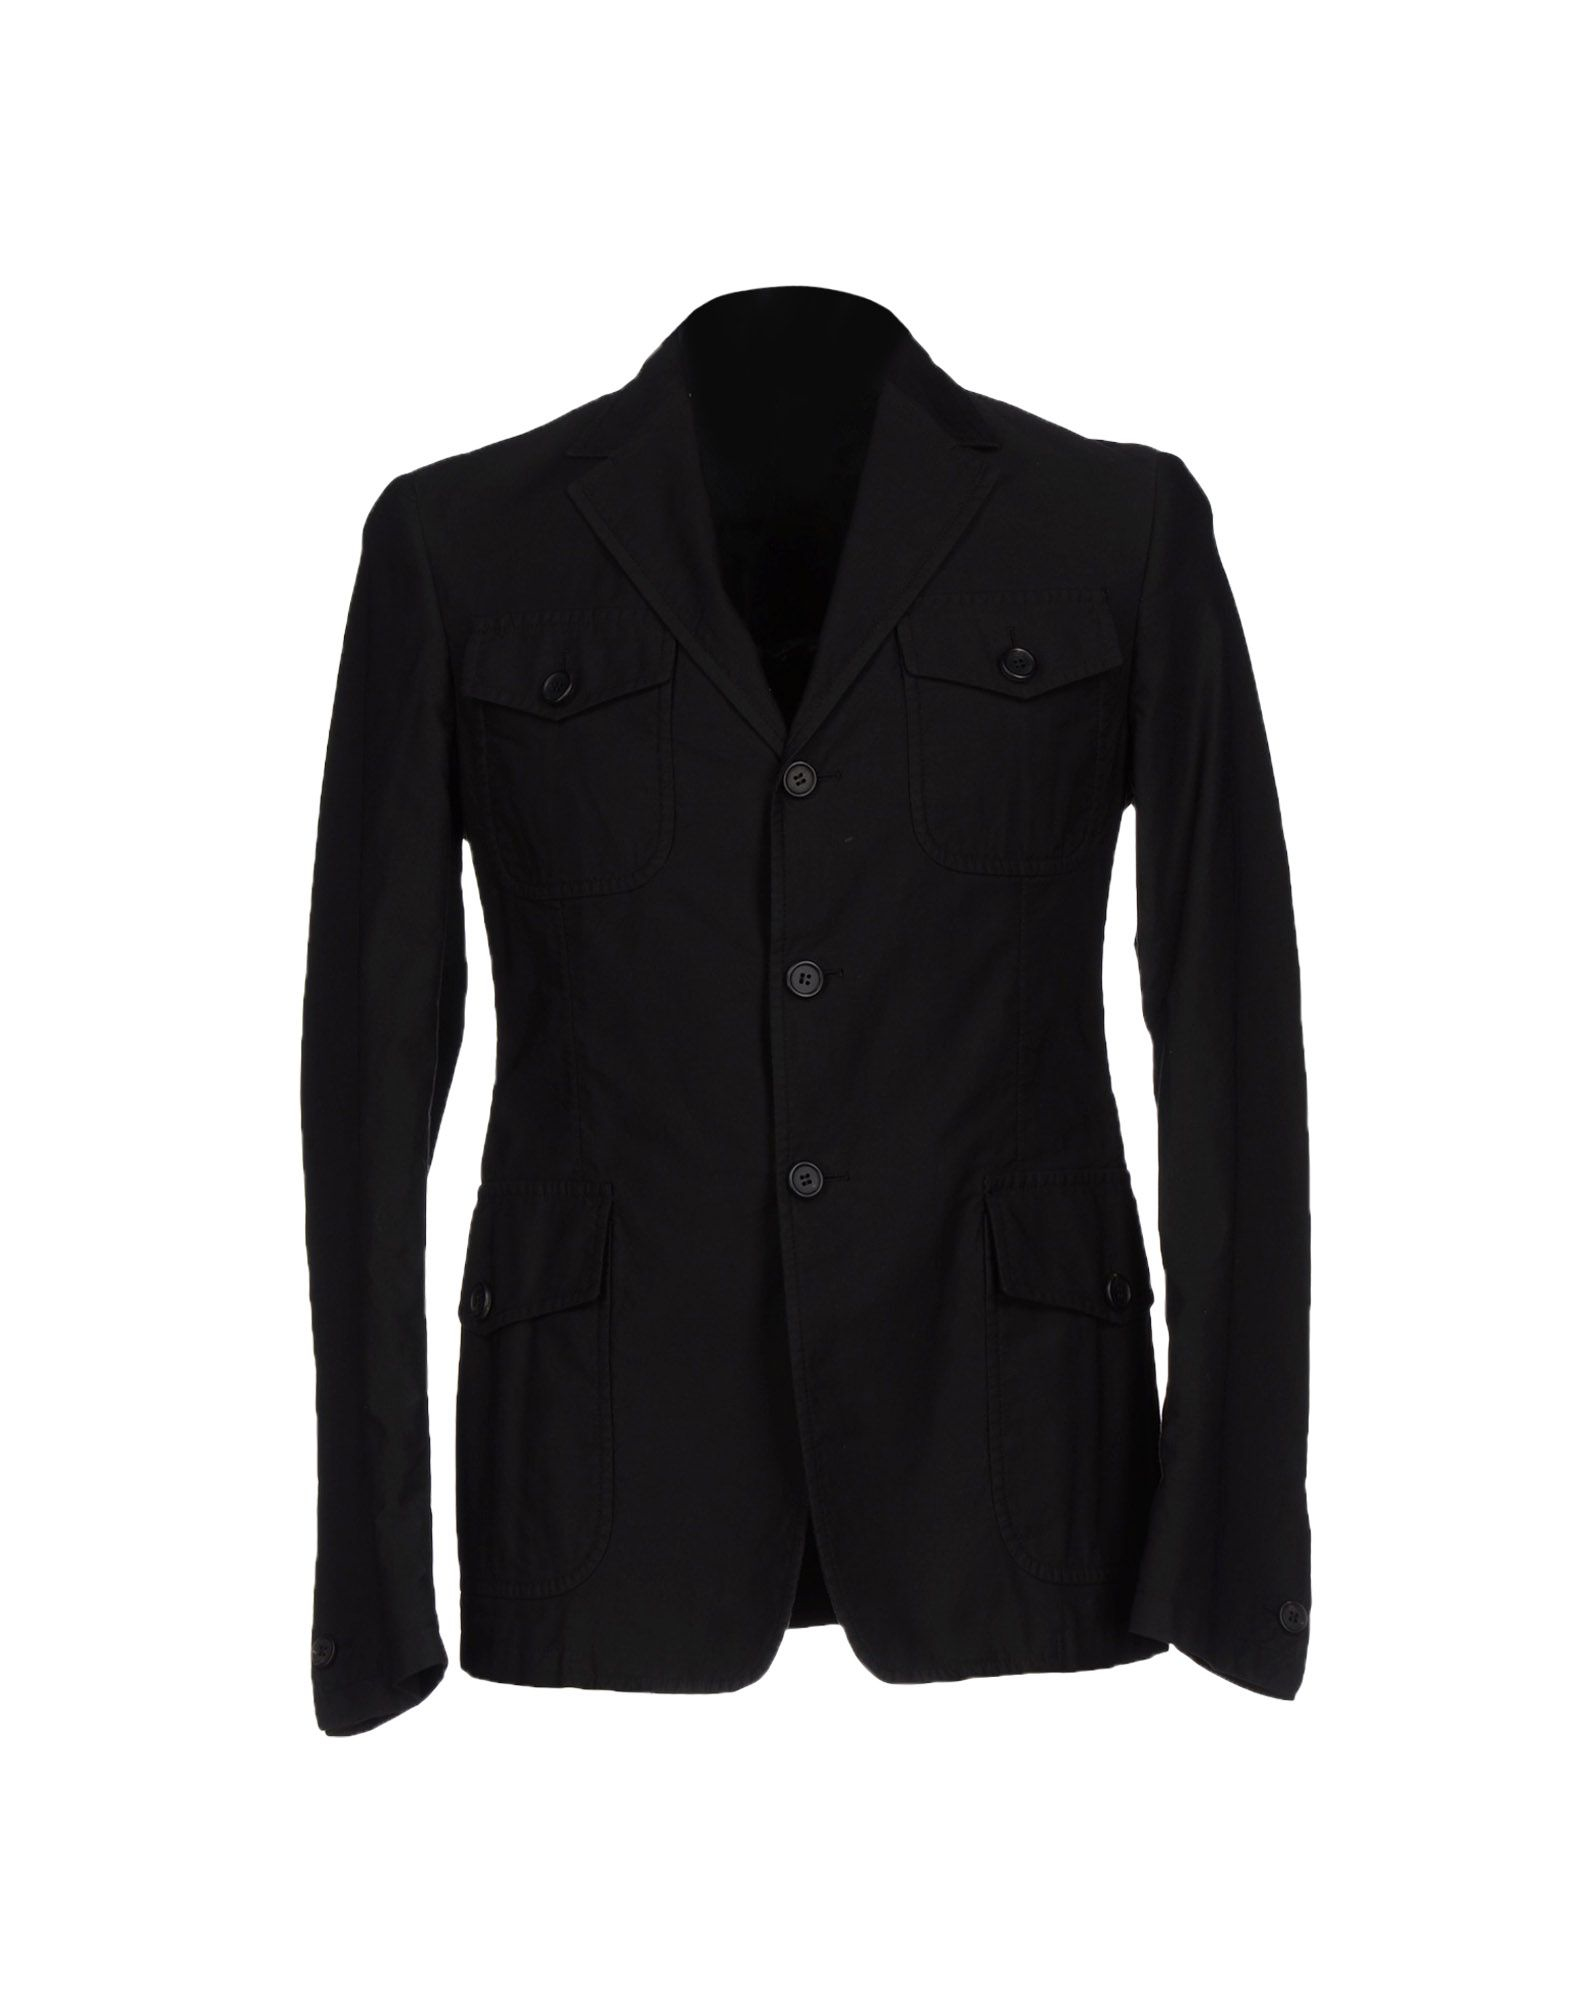 Lyst - Prada Blazer in Black for Men